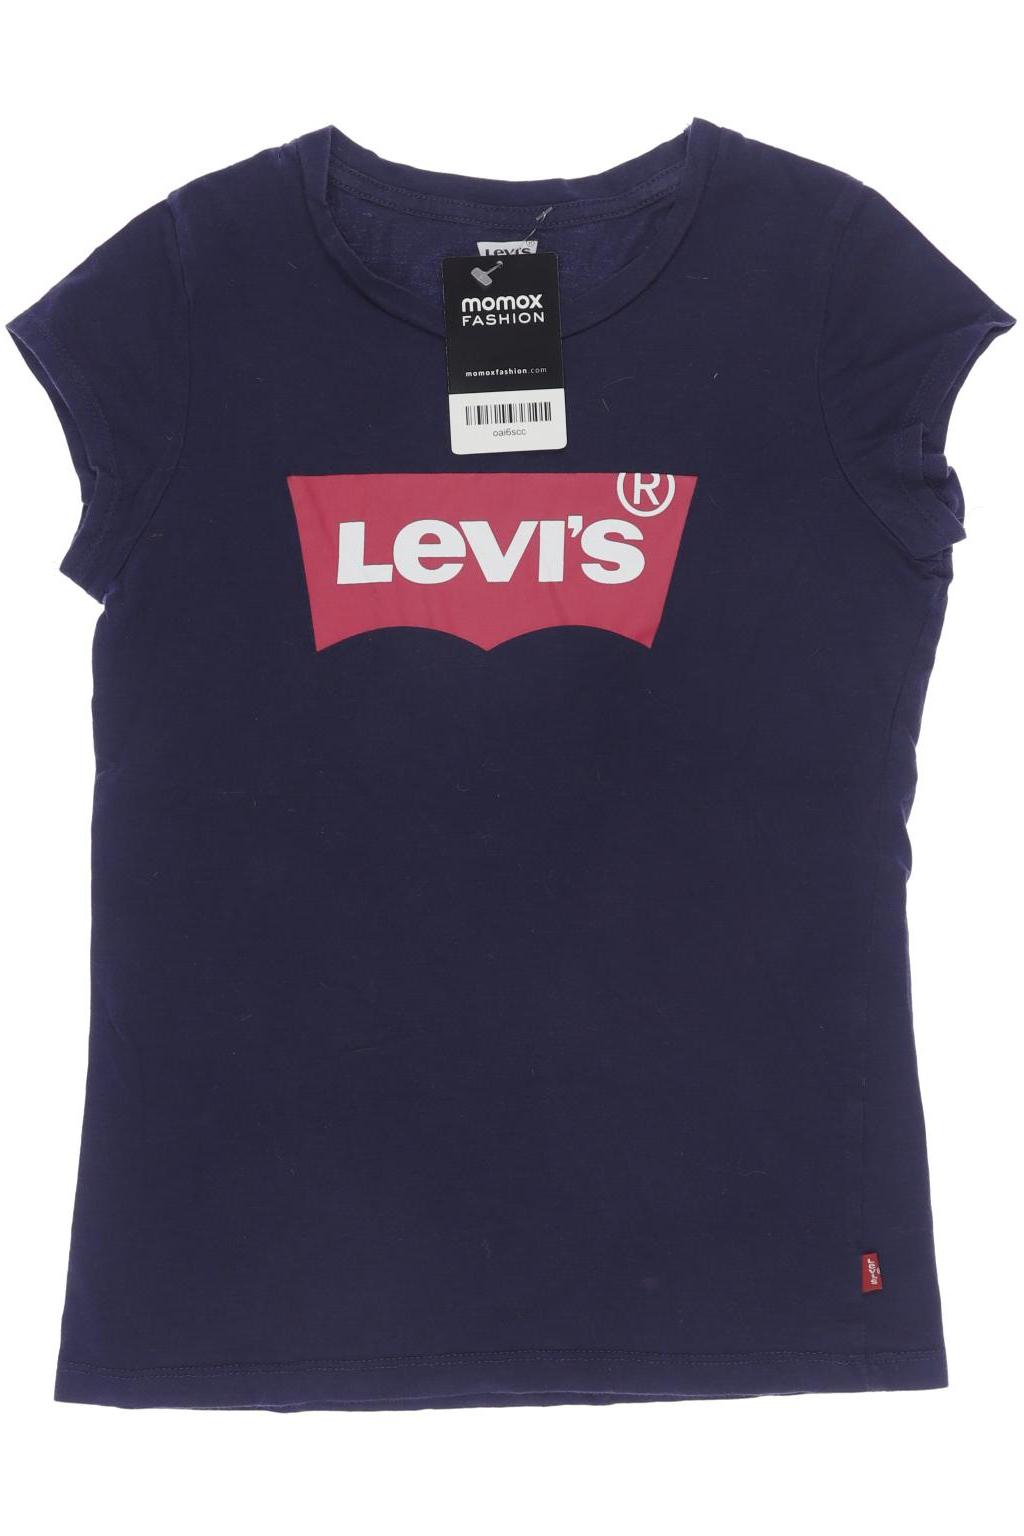 Levis Damen T-Shirt, marineblau, Gr. 158 von Levis